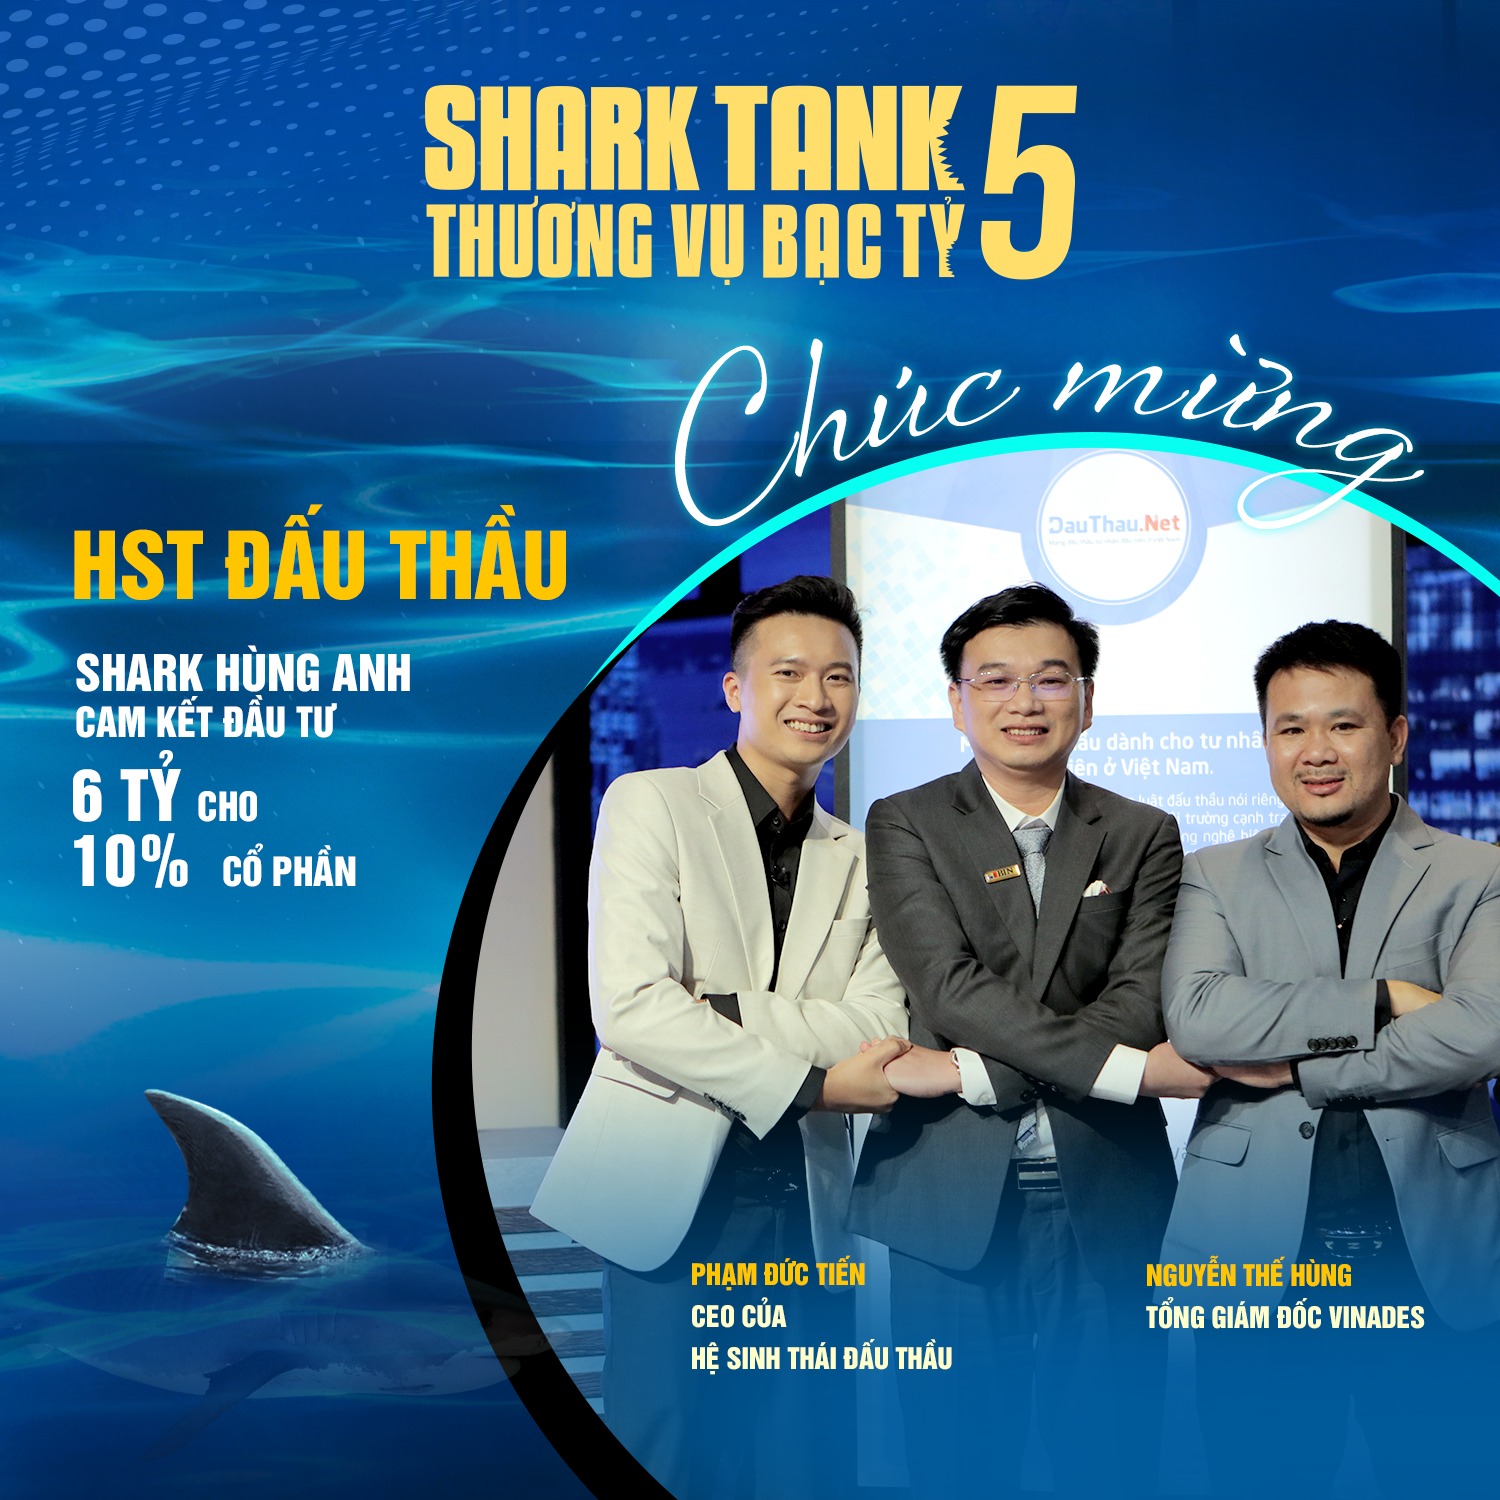 Shark Hùng Anh giành được startup cuối cùng của Thương vụ...